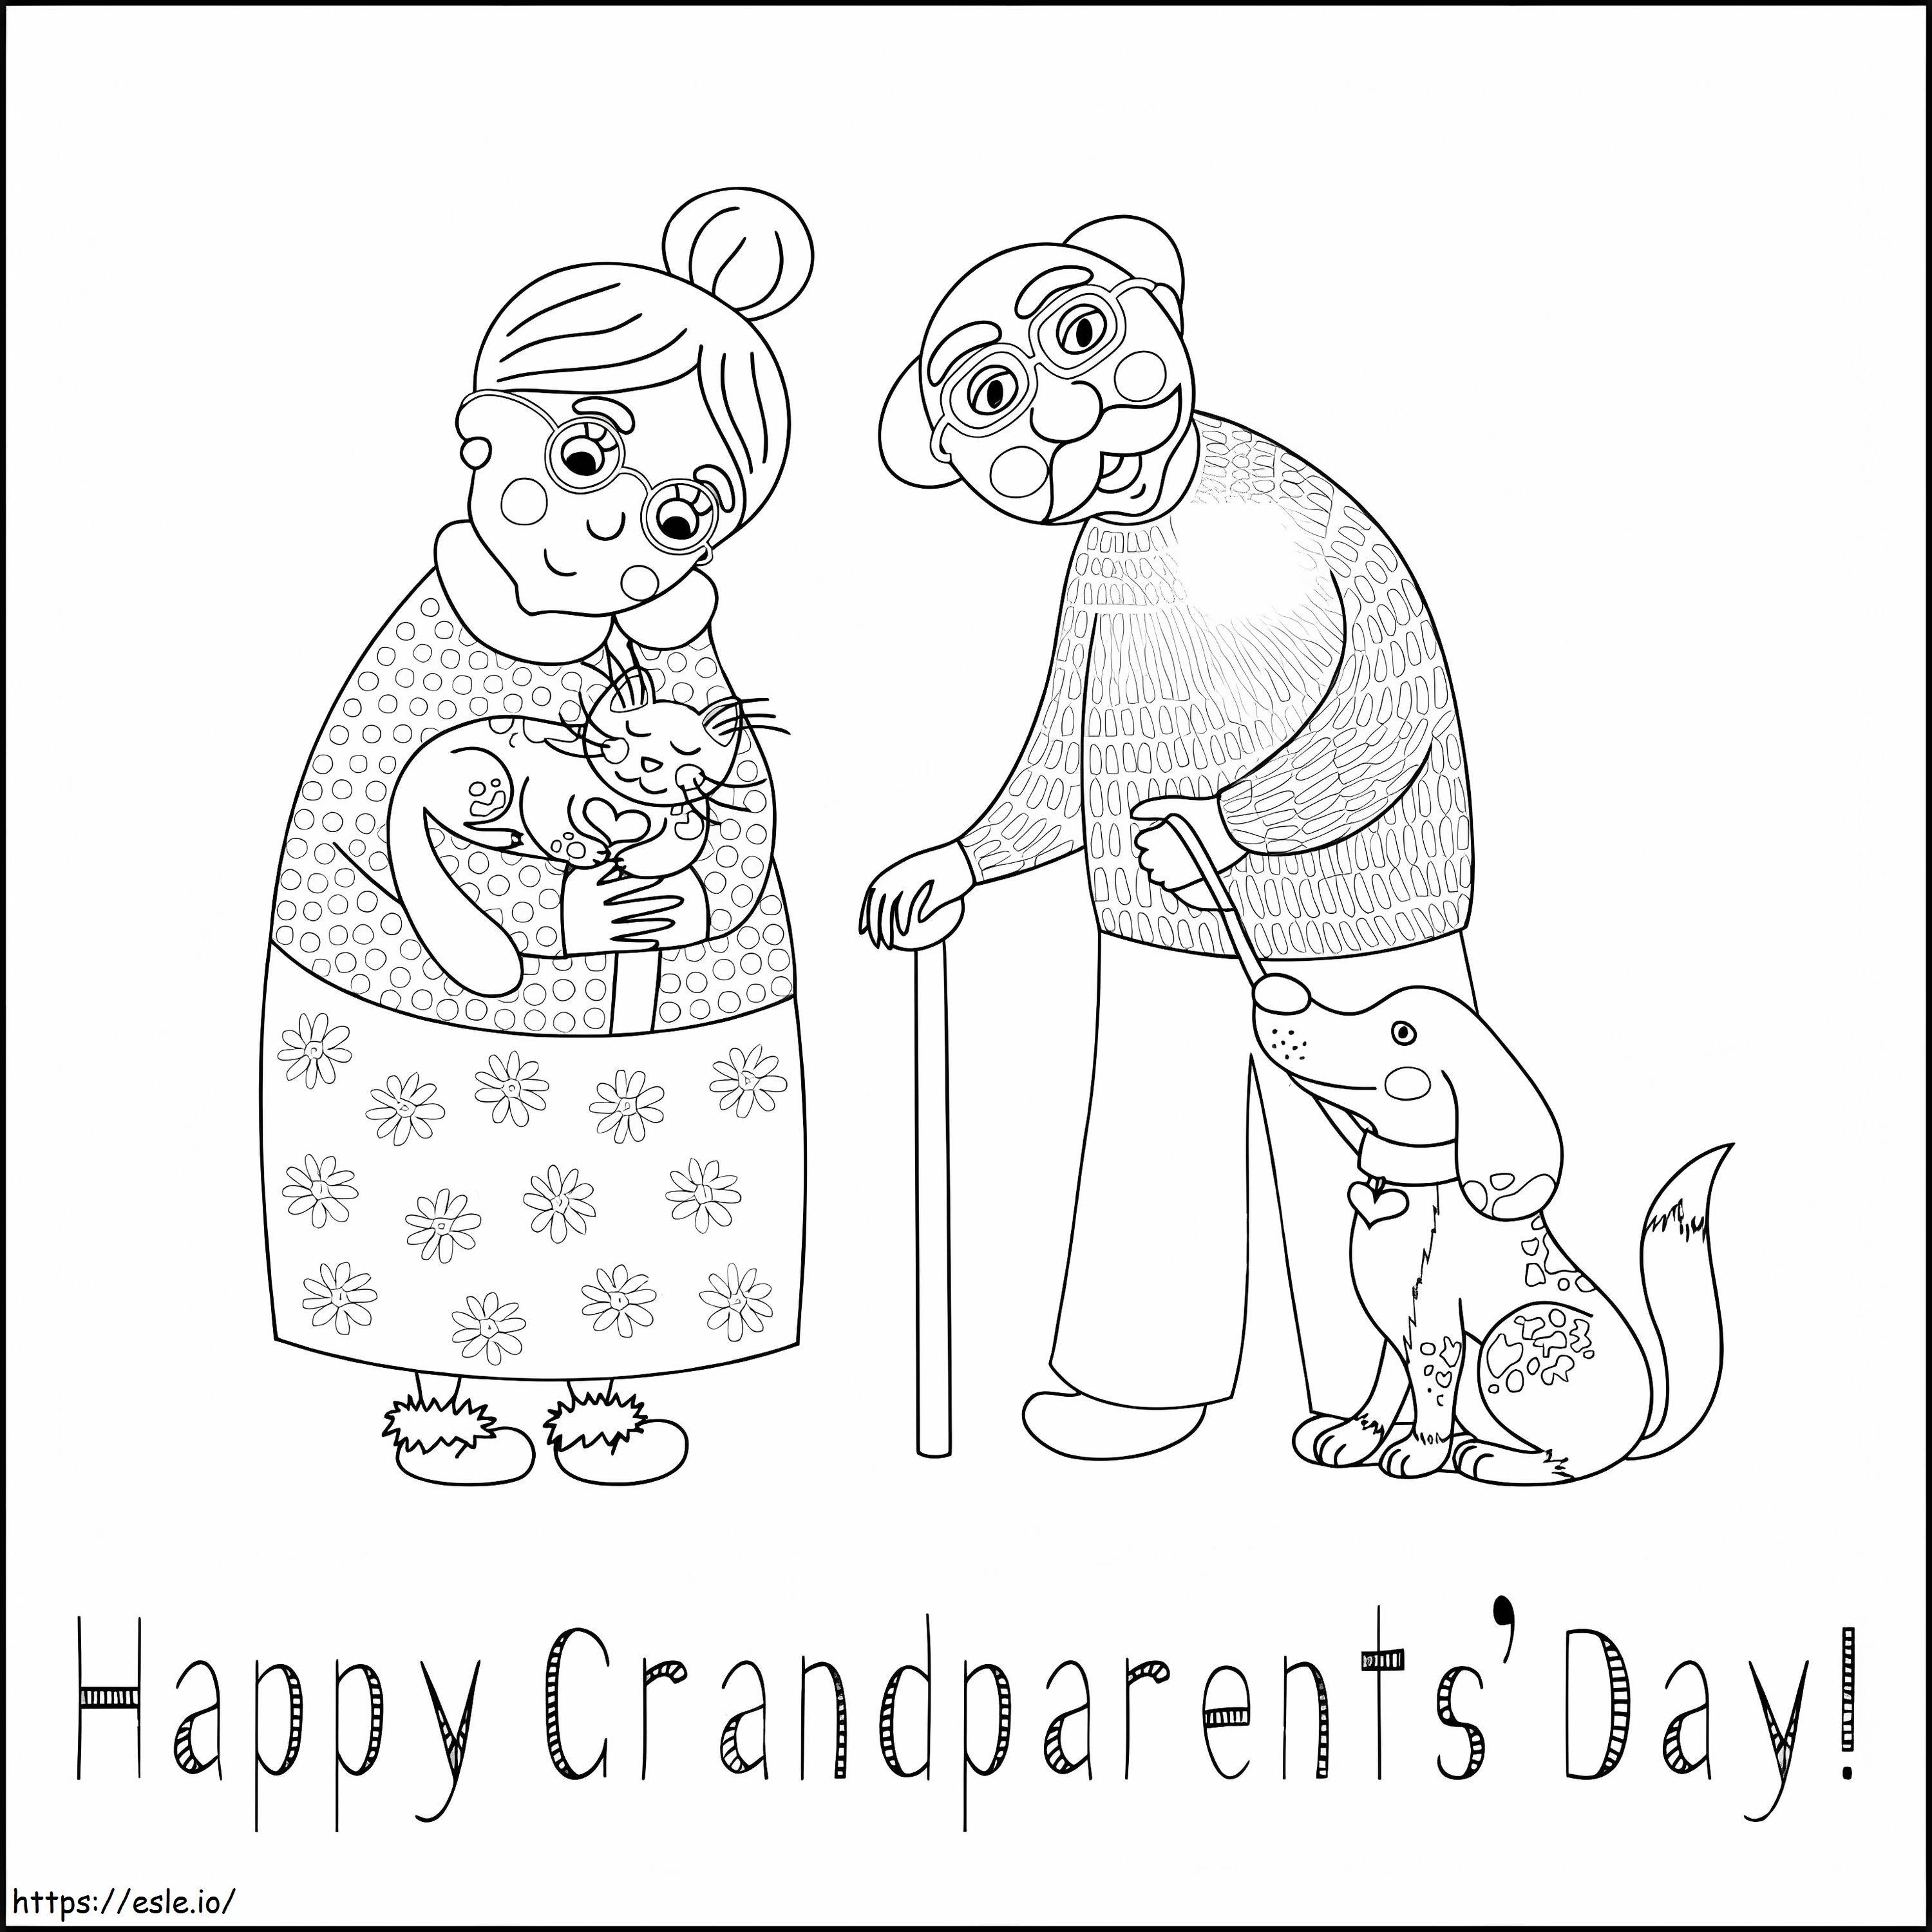 Szczęśliwego Dnia Babci i Dziadka 1 kolorowanka